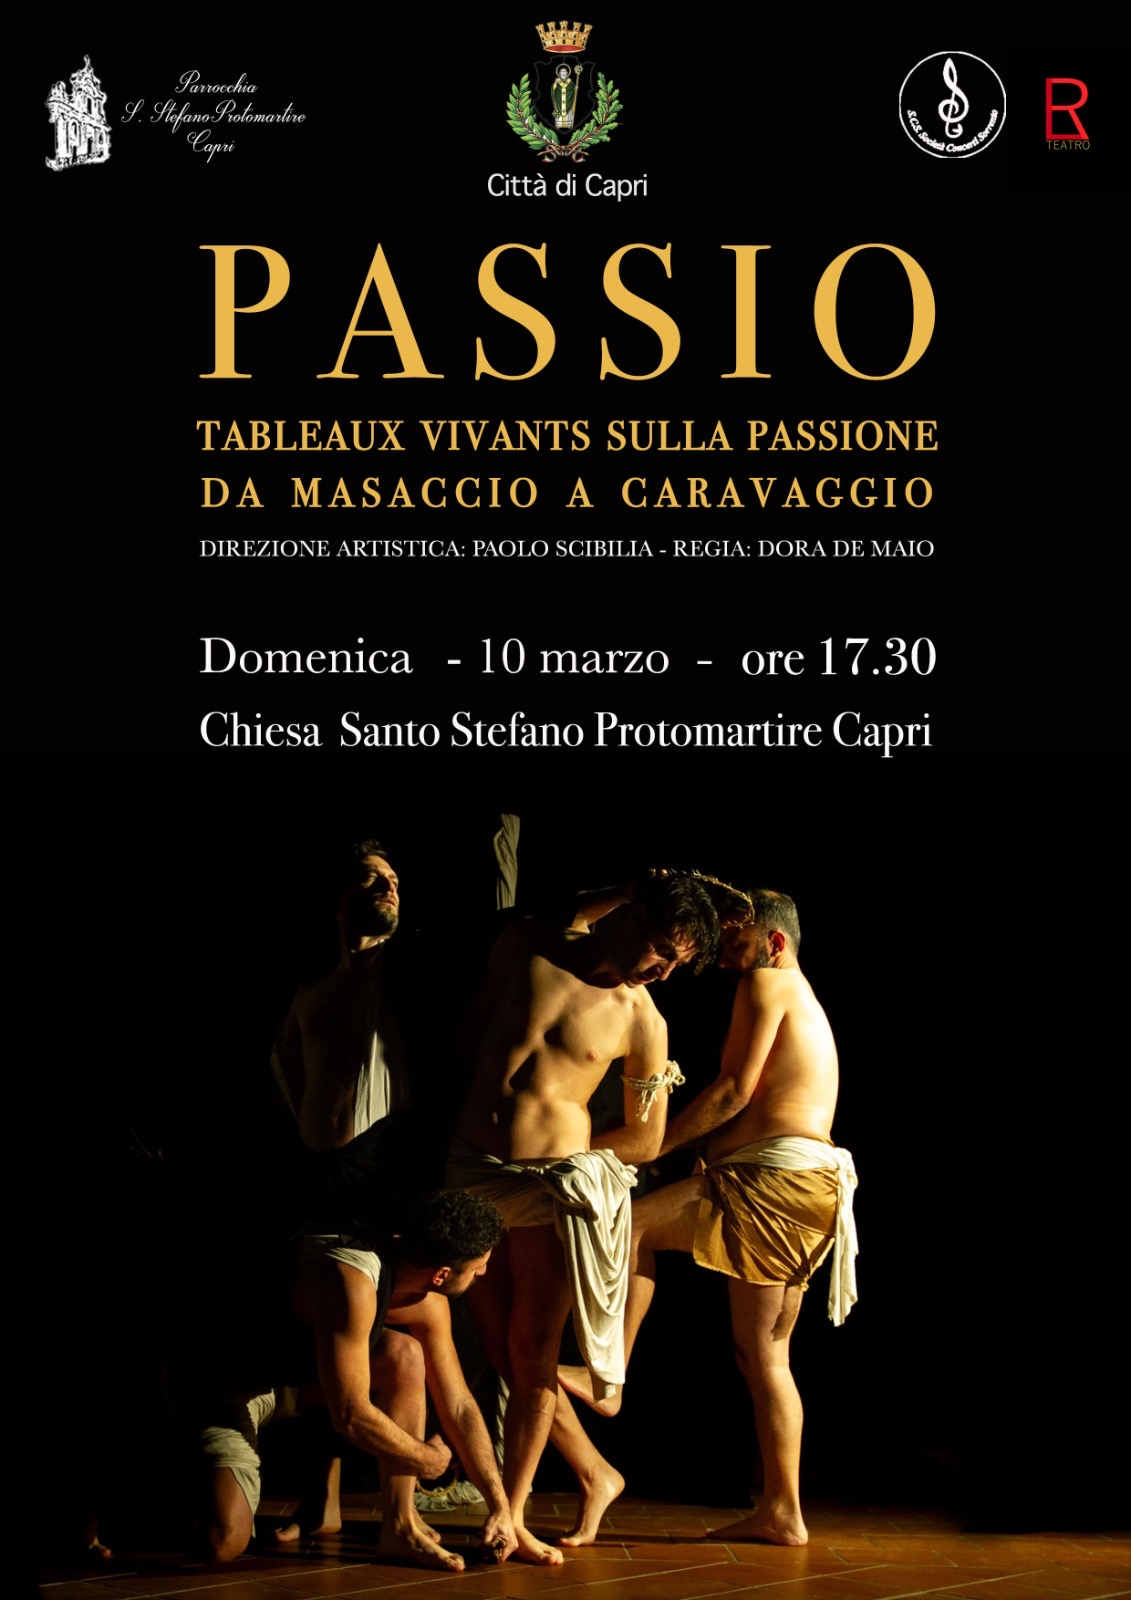 Passio: tableaux vivants a Capri nella chiesa di Santo Stefano